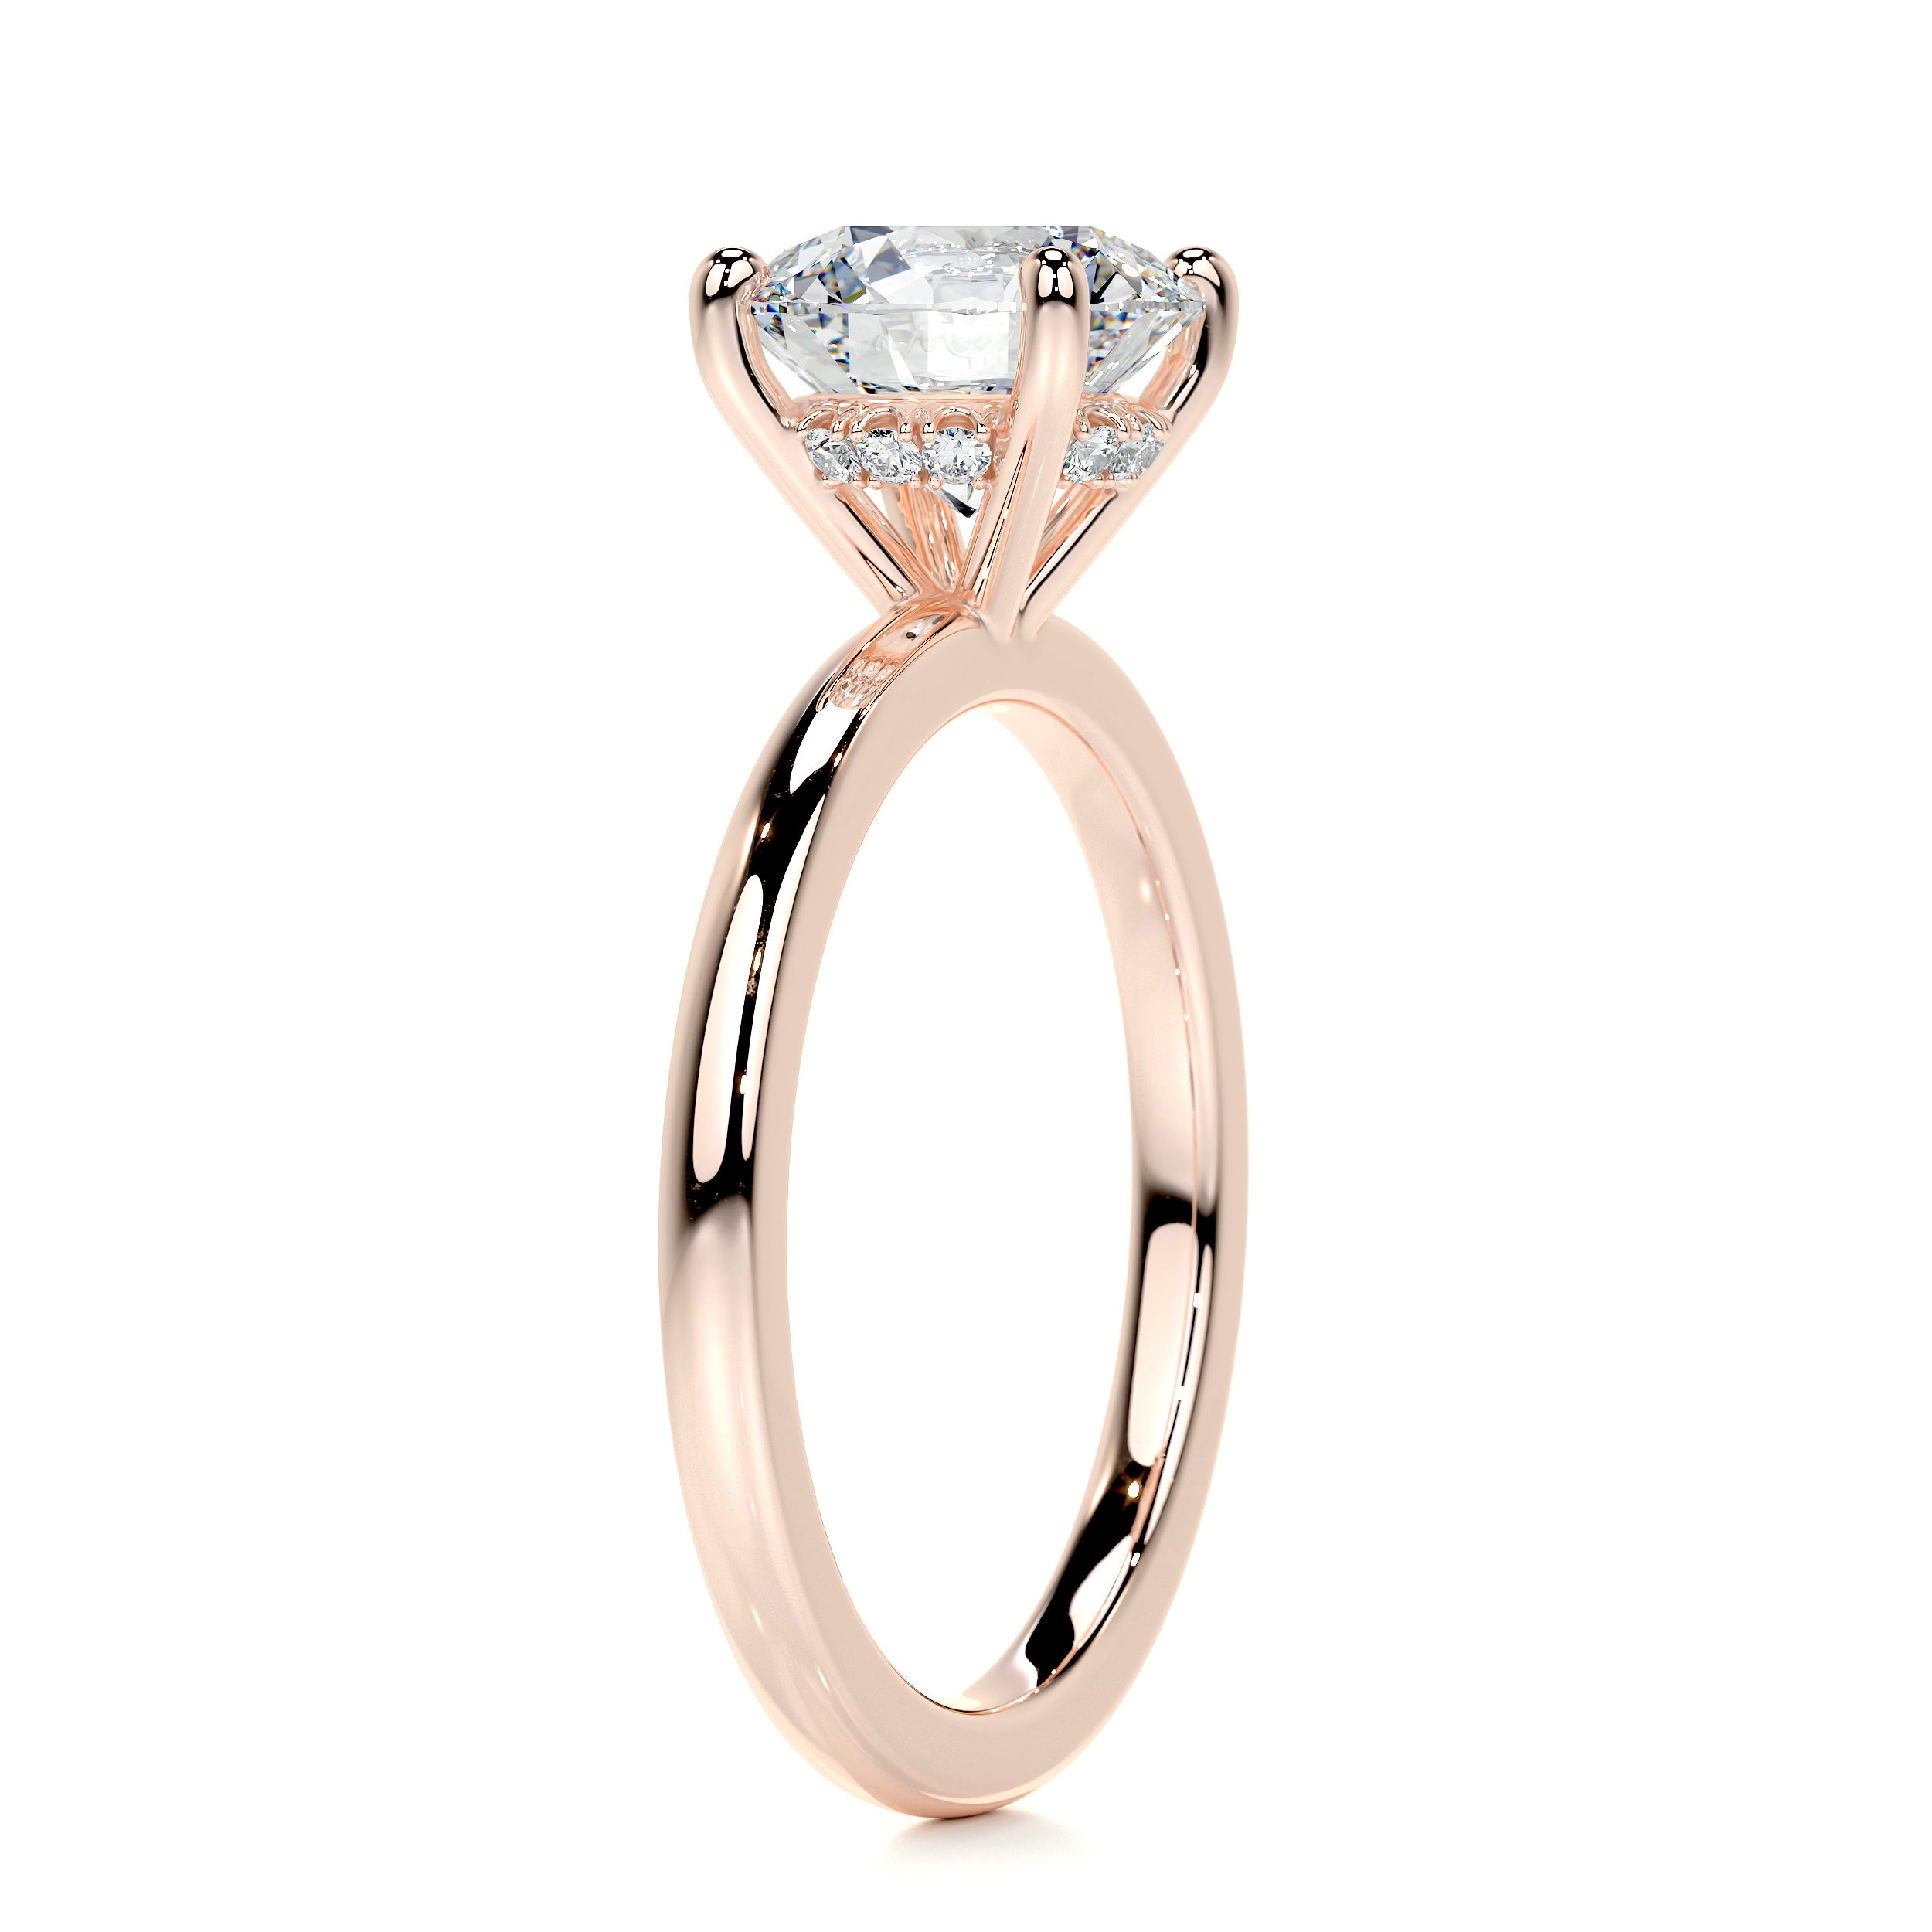 Cynthia Diamond Engagement Ring -14K Rose Gold